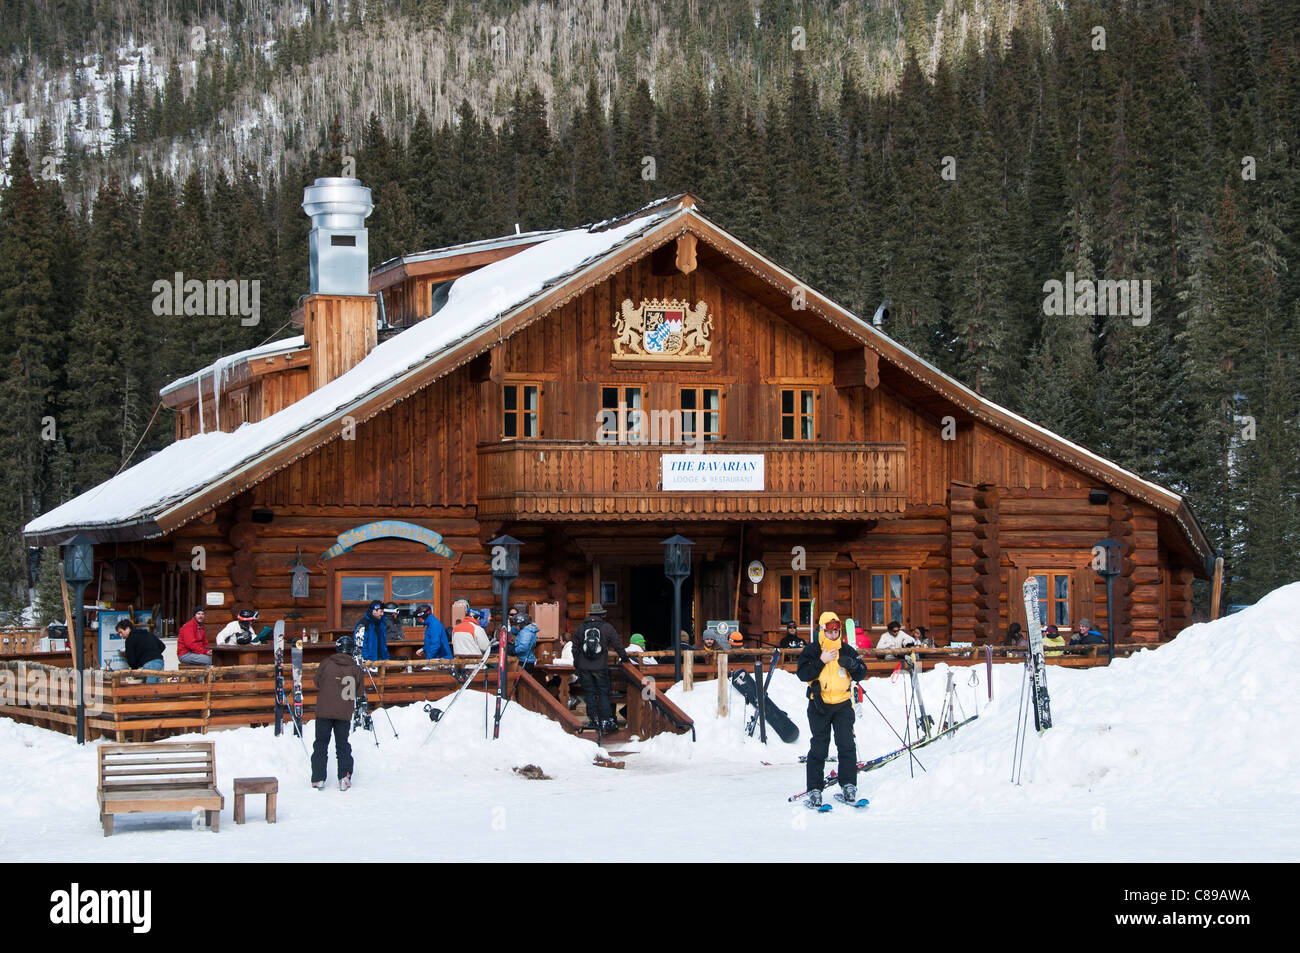 The Bavarian Lodge, Taos Ski Valley Ski Area, Taos Ski Valley, New Mexico. Stock Photo